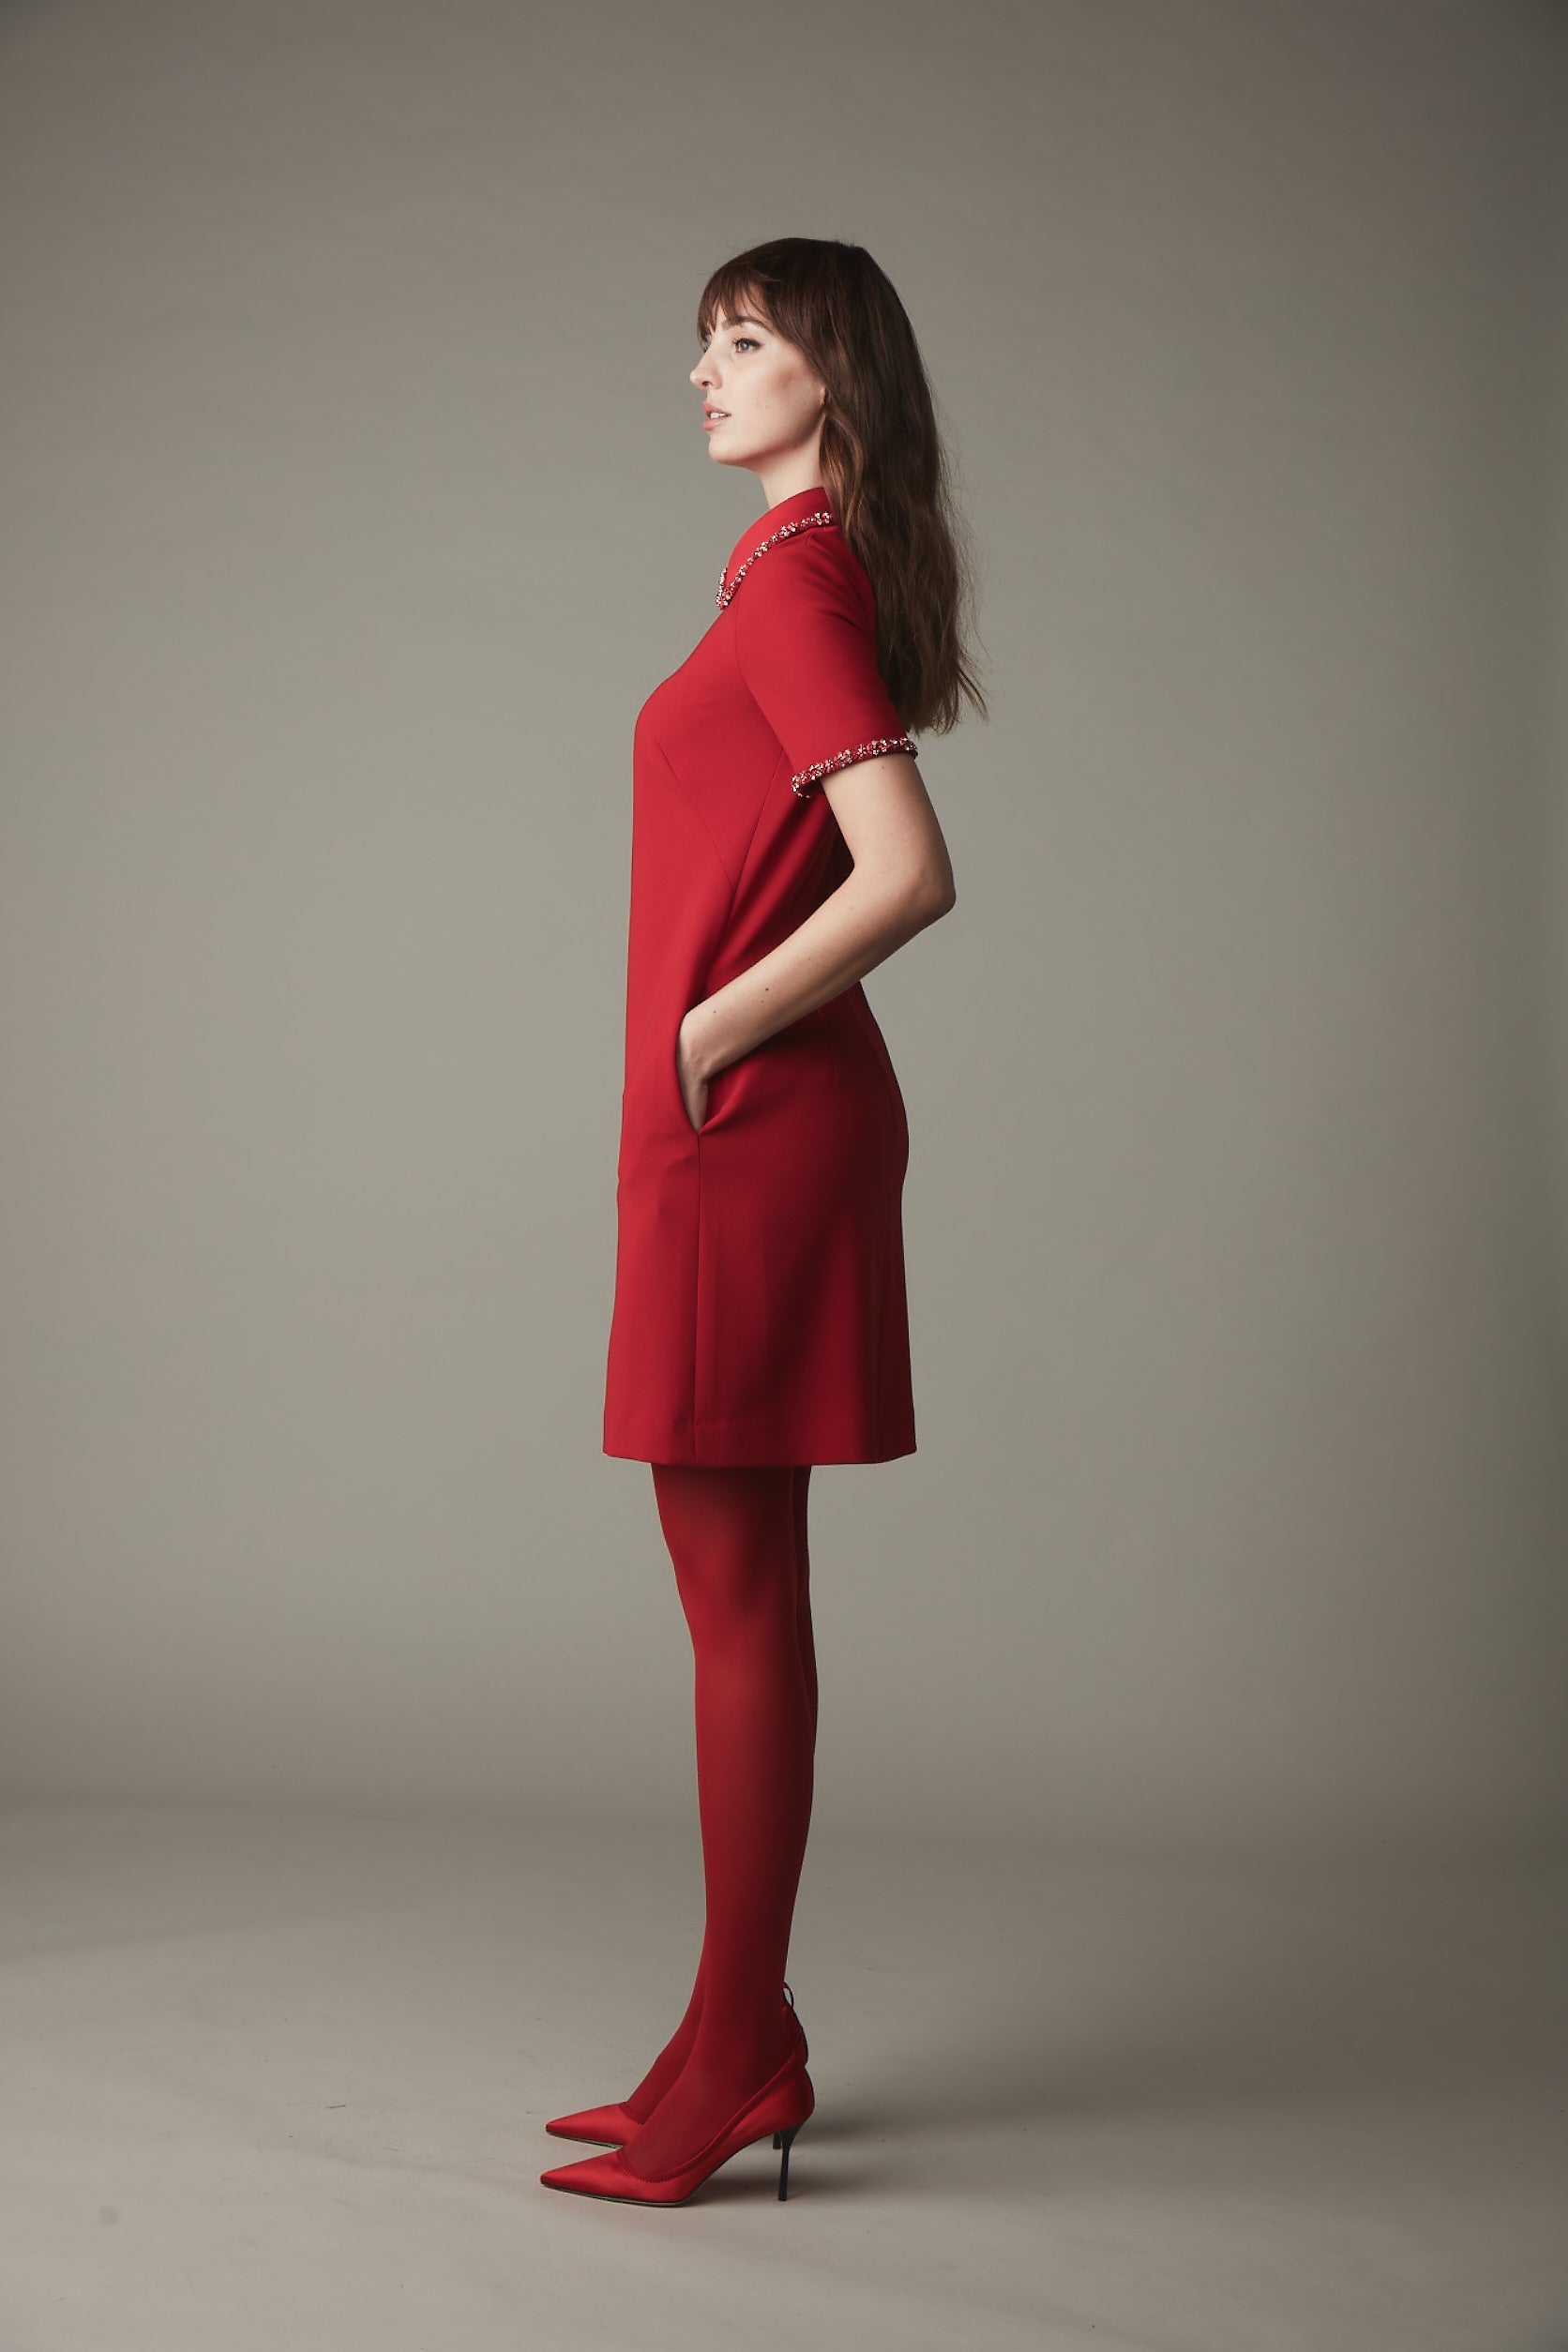 Jewel Collar A-Line Dress - Ruby Red Pink Tartan